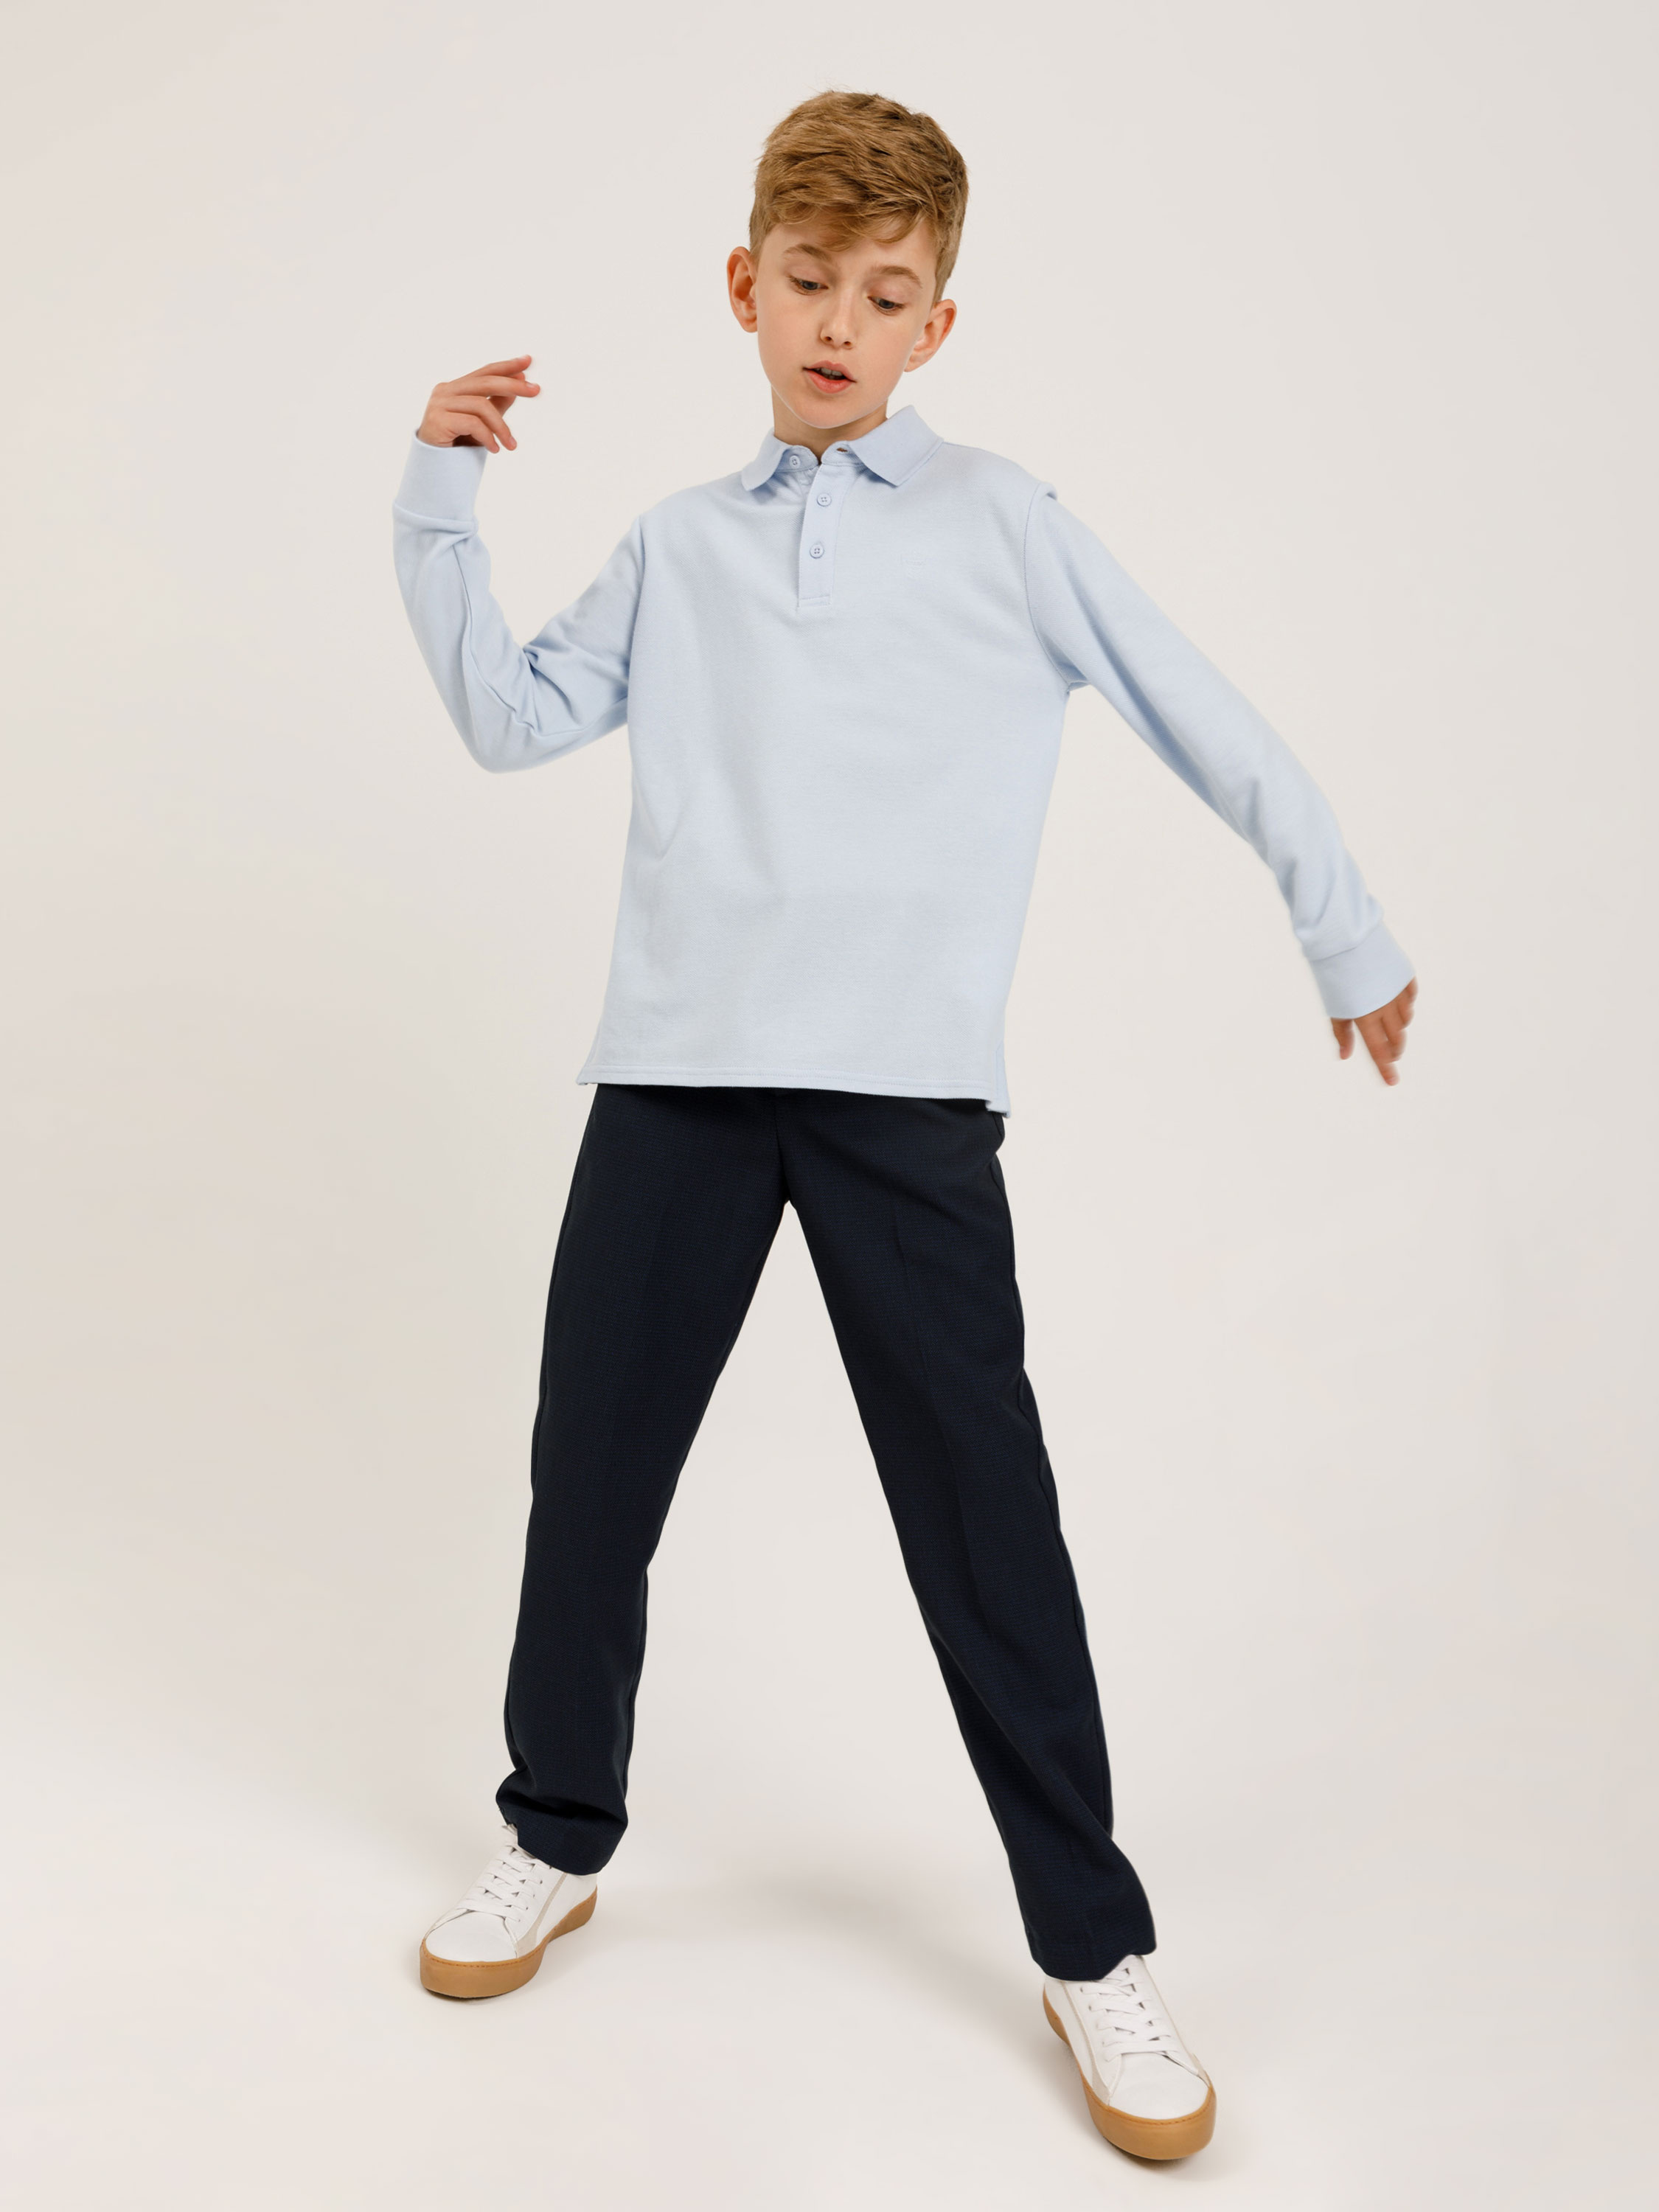 Классические брюки для мальчиков цвет: темно-синий, артикул: 0808071532 –купить в интернет-магазине sela